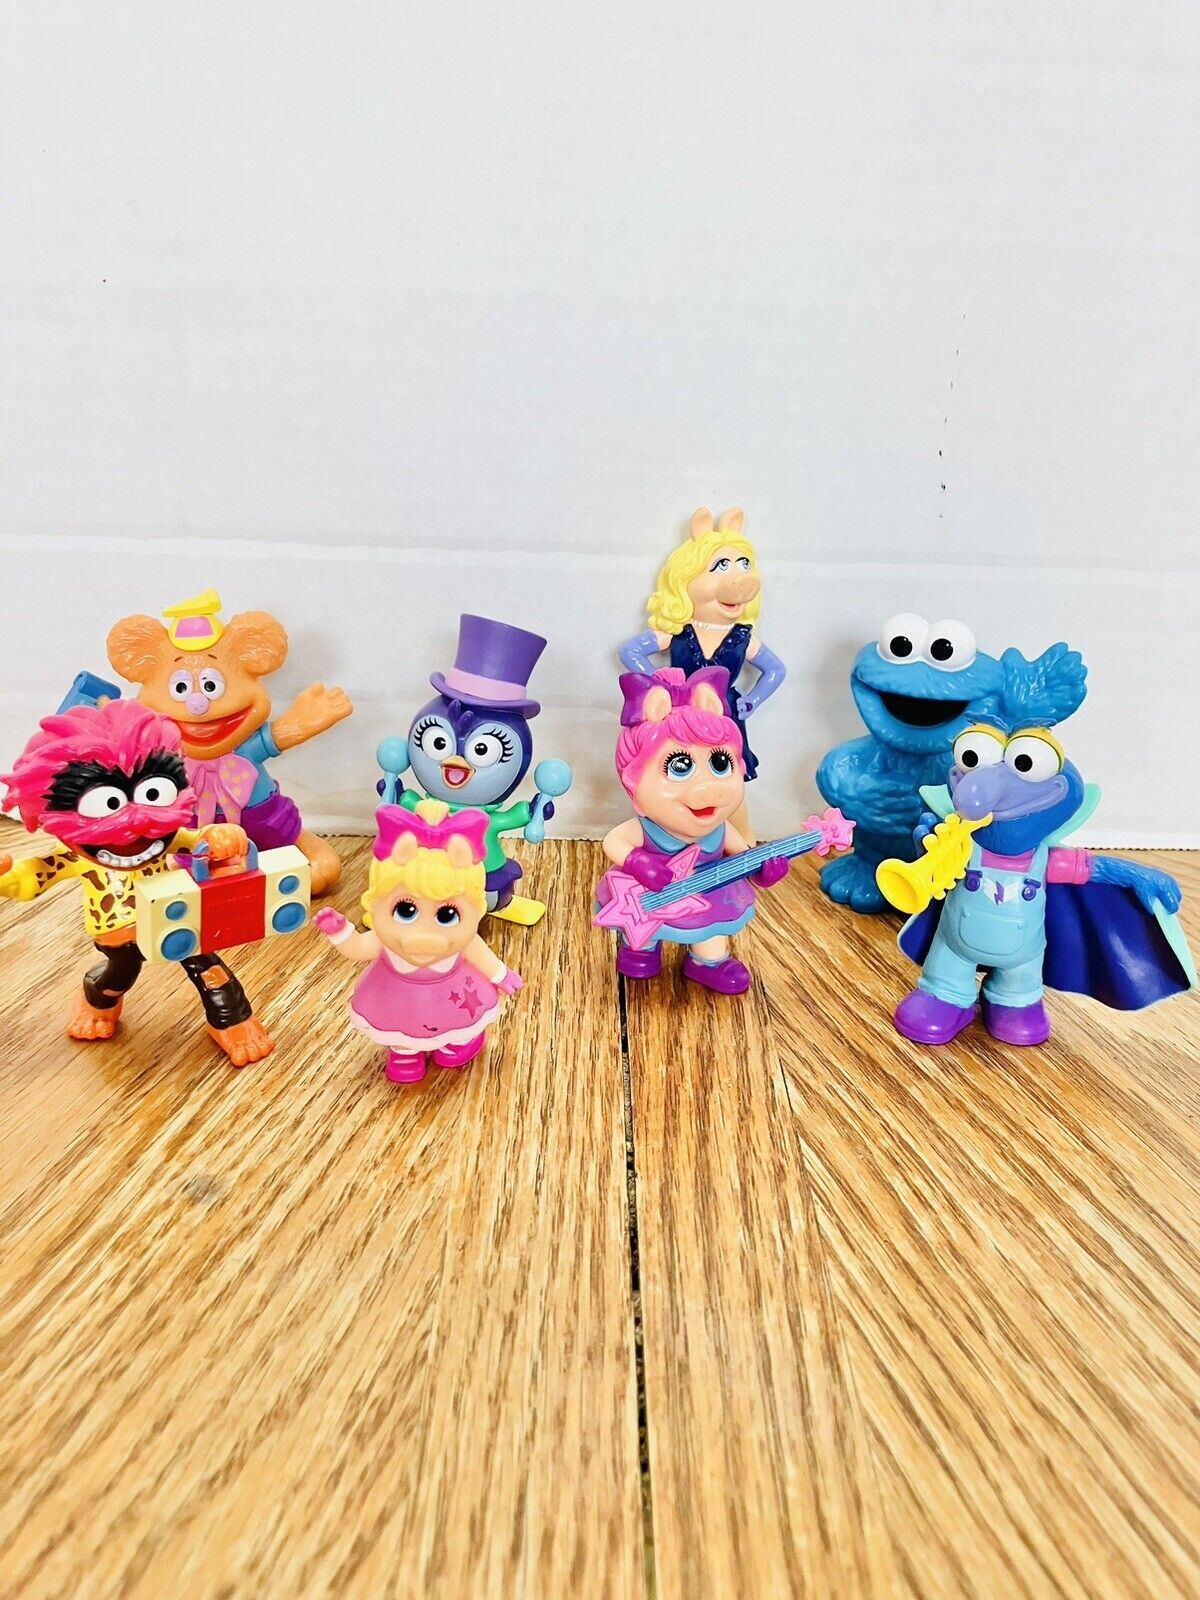 Disney Jr Muppet Babies Rocksplosion Figures And More (8) Gonz Animal